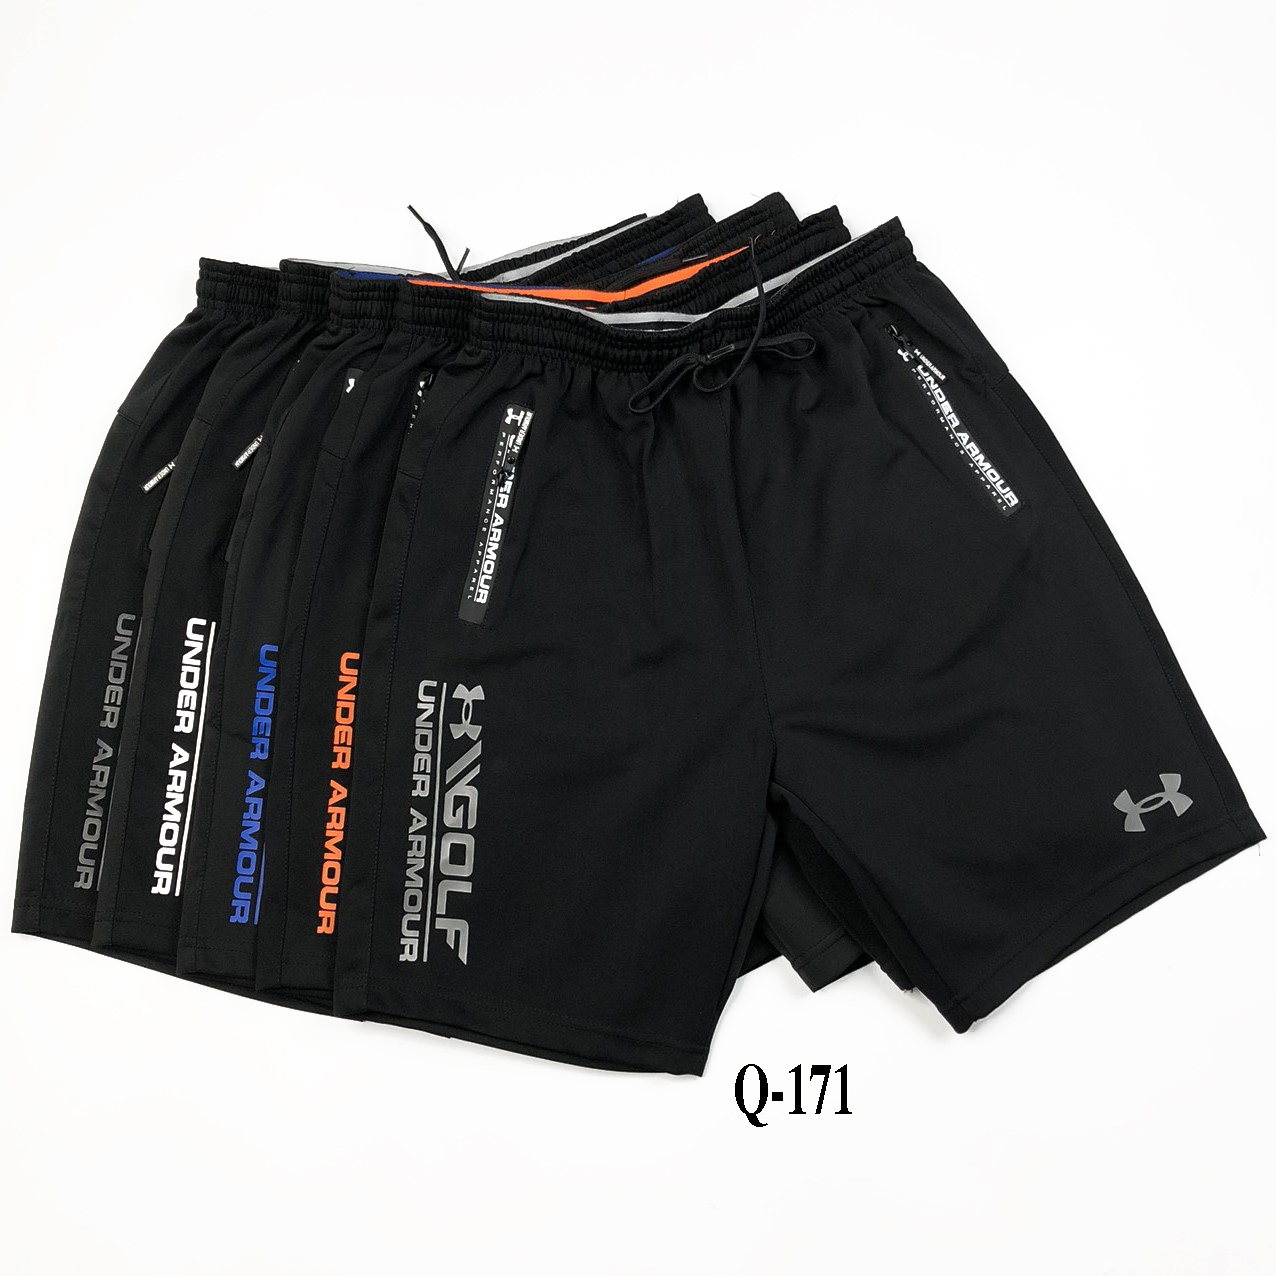 Quần đùi nam thun thể thao ngắn Q171 quần short nam đẹp sọt nam lưng thun cao cấp giá rẻ có size lớn cho người mập big size